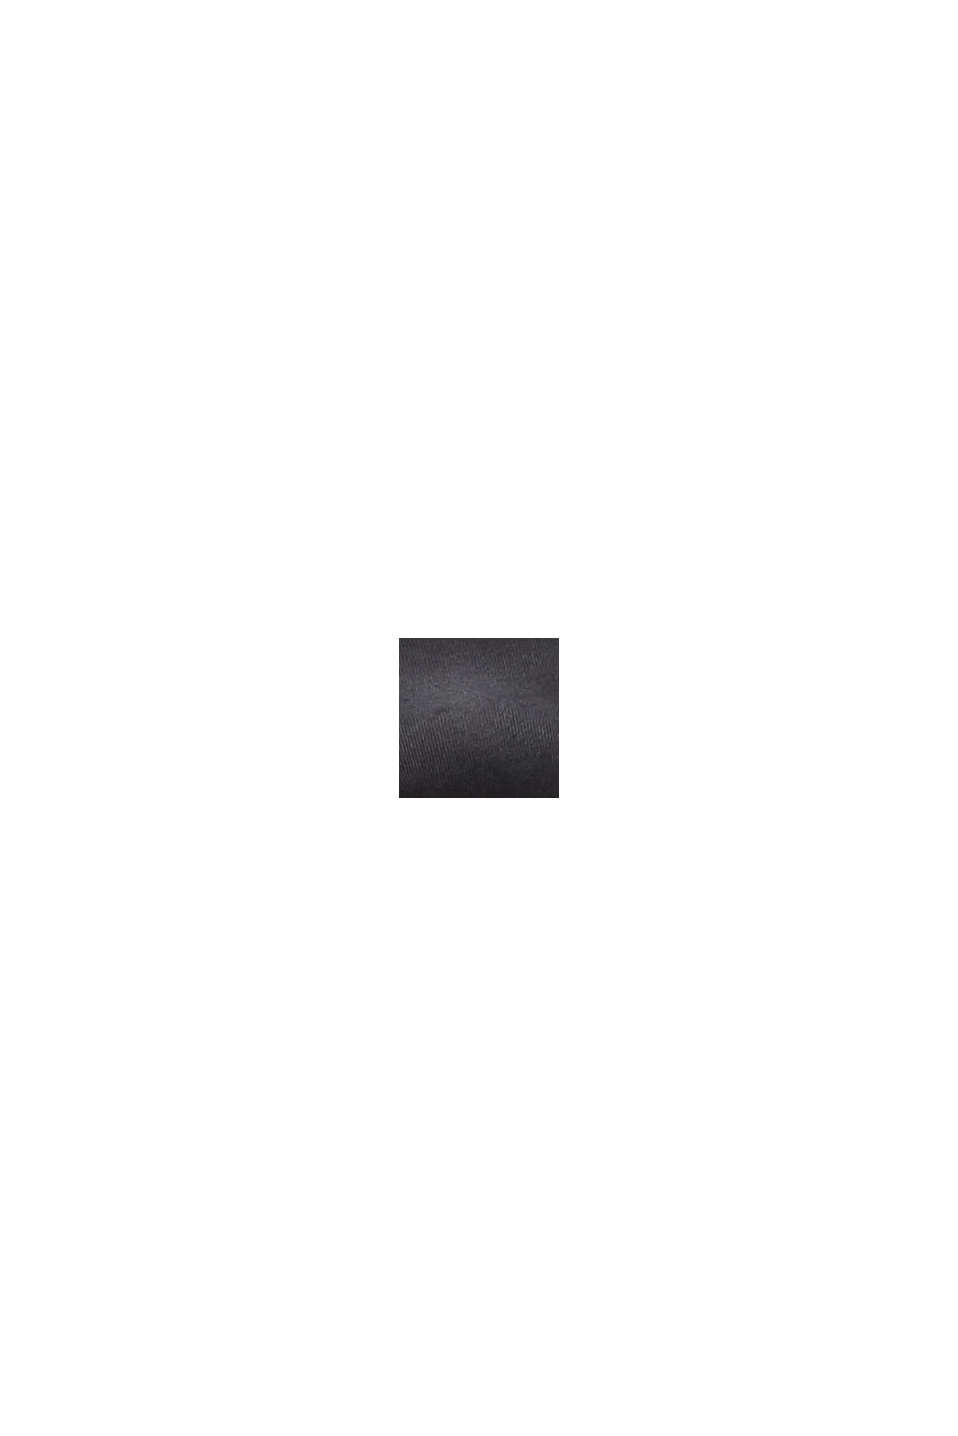 Soutien-gorge souple rembourré en microfibre, BLACK, swatch